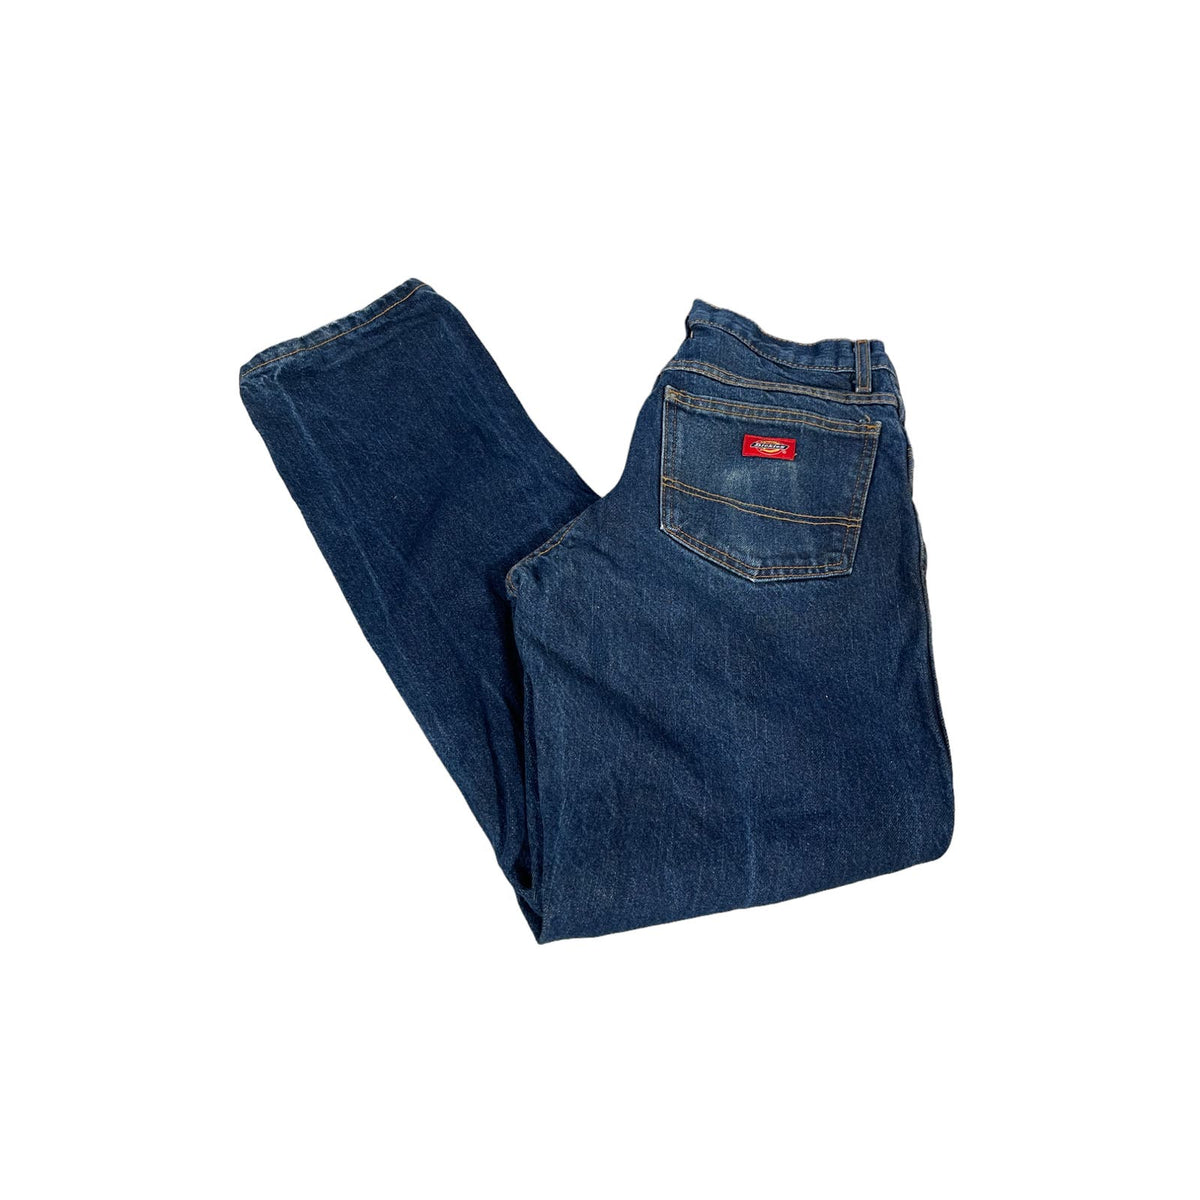 Vintage Dickies Distressed Indigo Denim Jeans 30x32